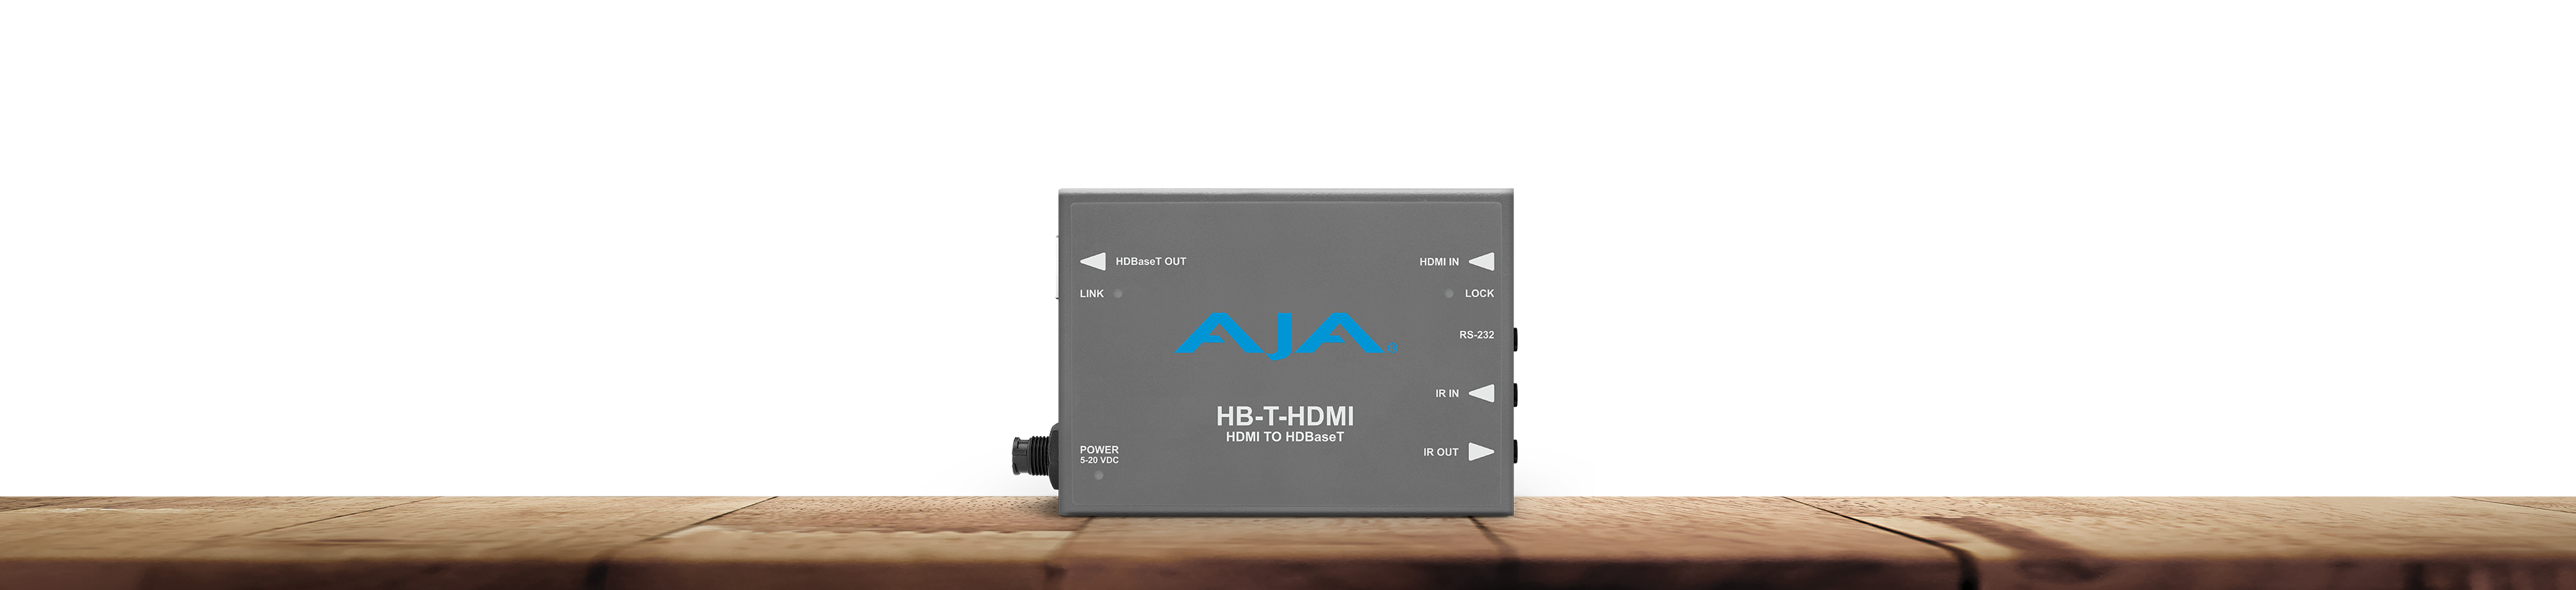 HB-T-HDMI